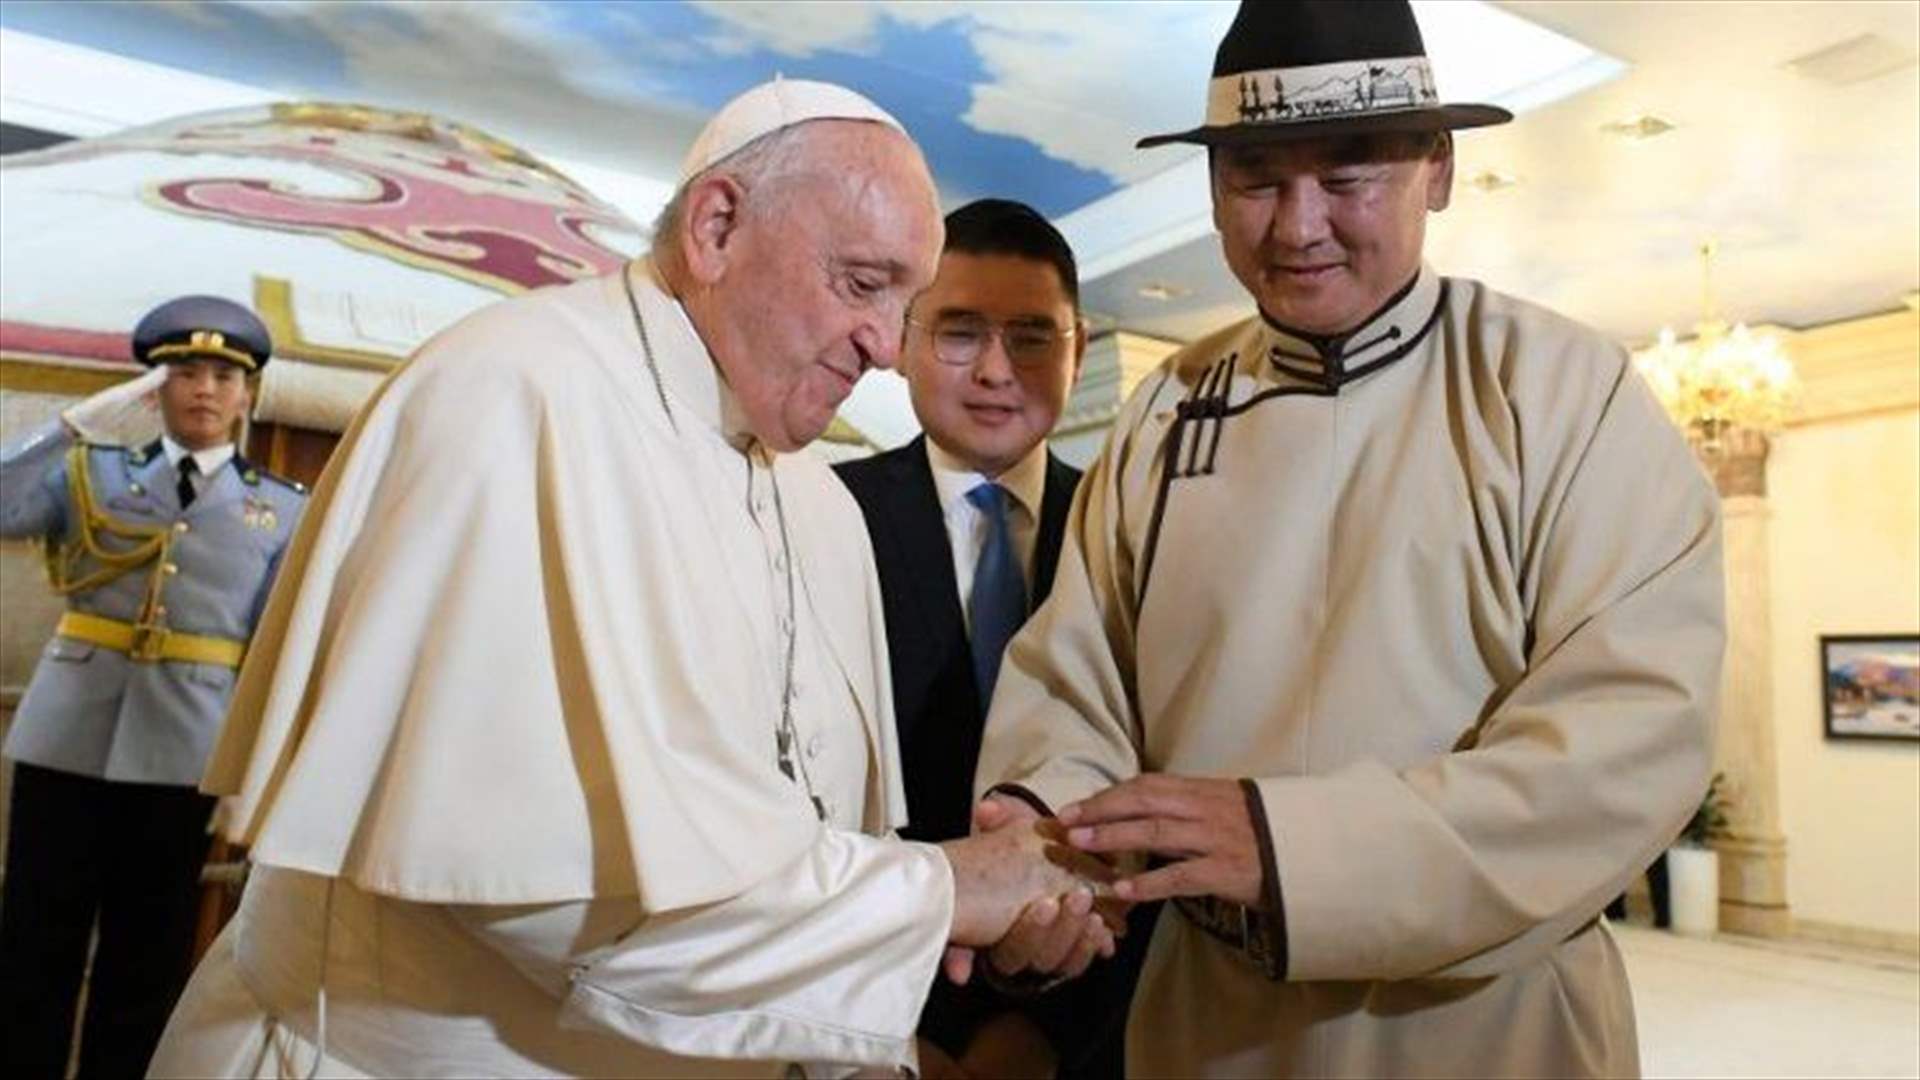 البابا في منغوليا في زيارة غير مسبوقة دعما للكاثوليك